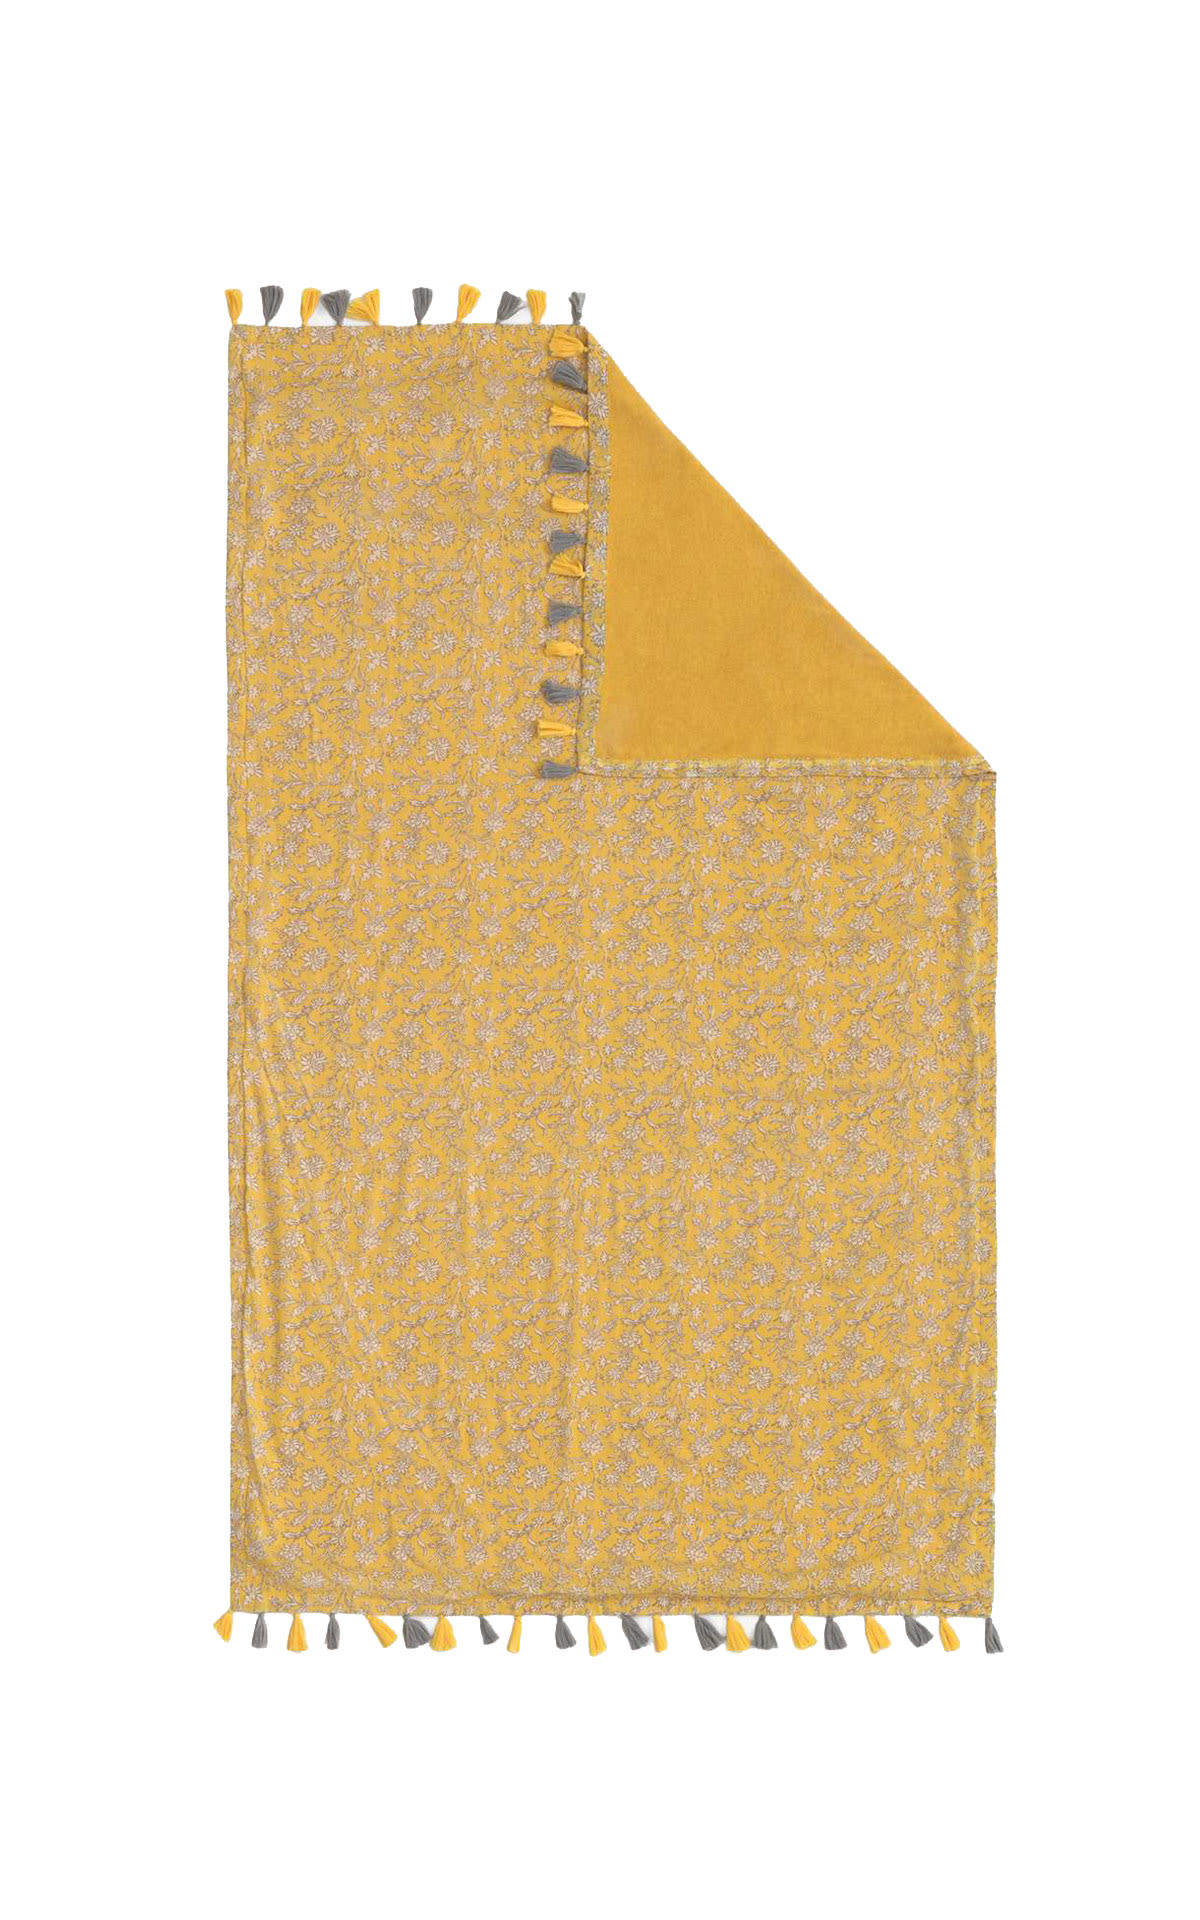 Printed yellow towel Textura